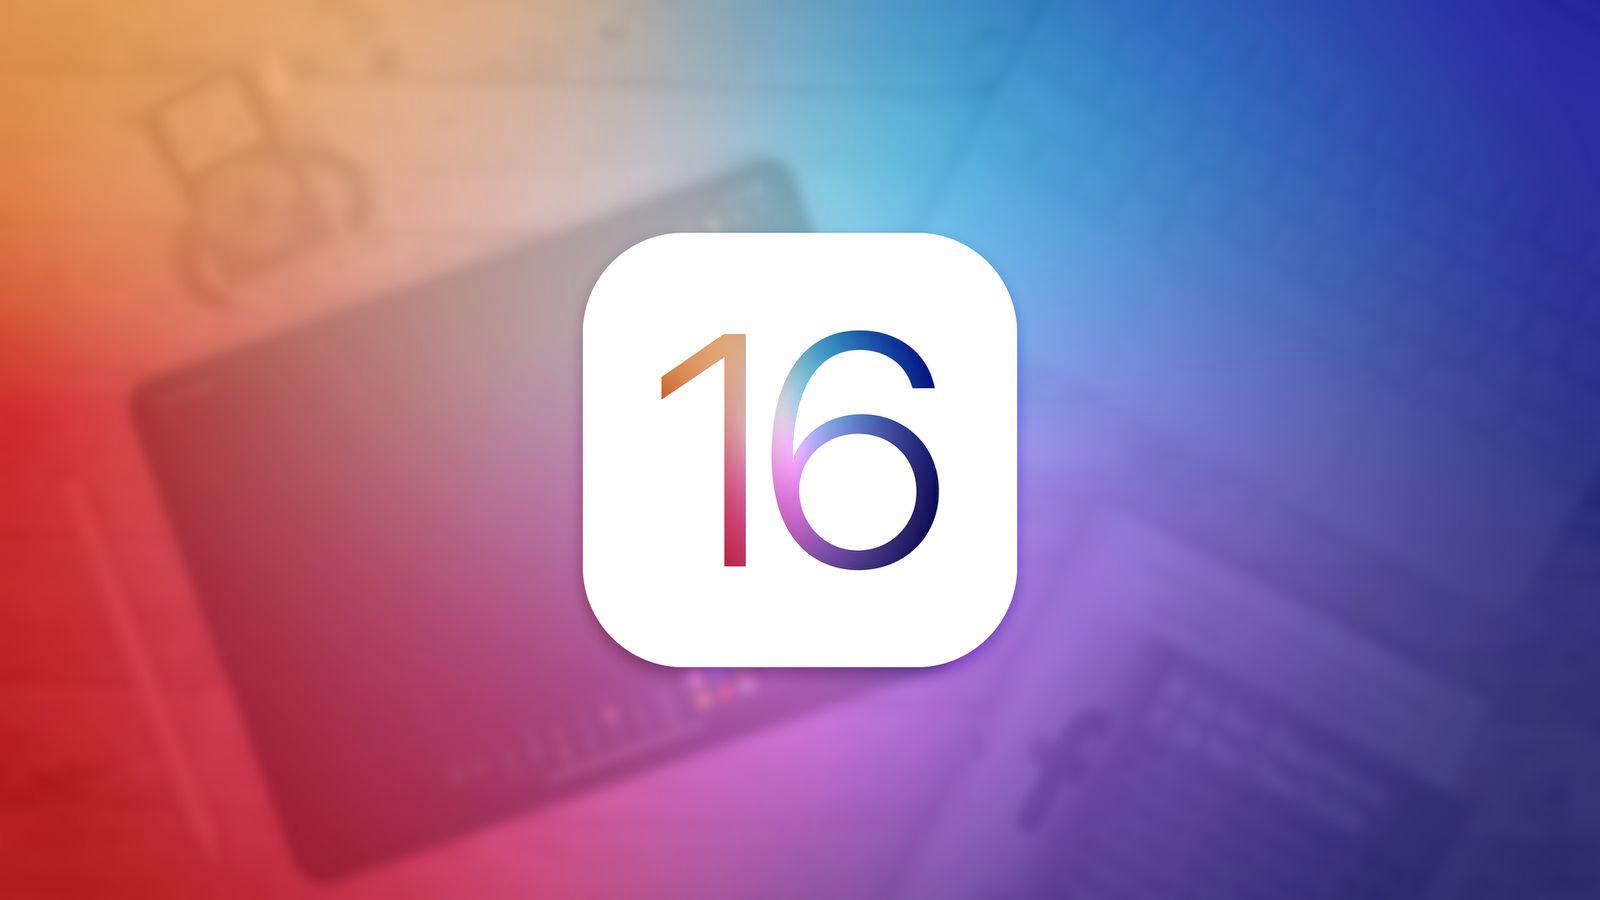 iOS 16 将大幅改进通知提醒、健康跟踪 但界面不会大改